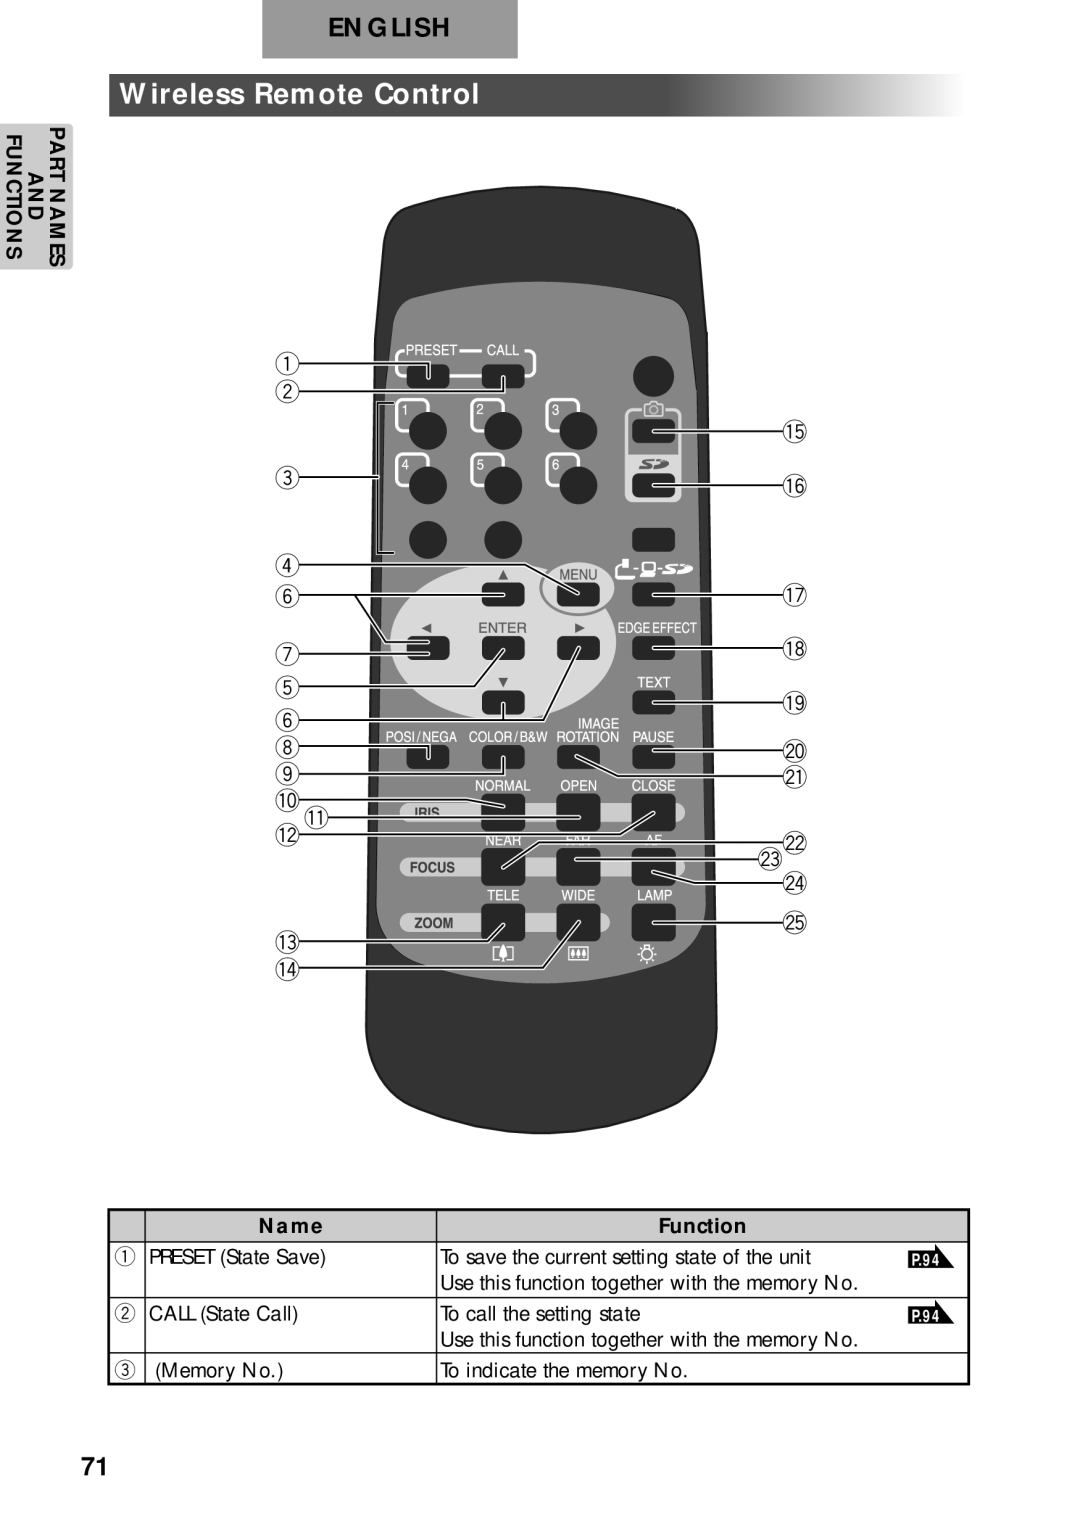 Elmo p10 instruction manual Wireless Remote Control, English, q w e r y u t y i o 0 1 2 3 4, 5 6 7 8 9 @0 @1 @2 @3 @4 @5 